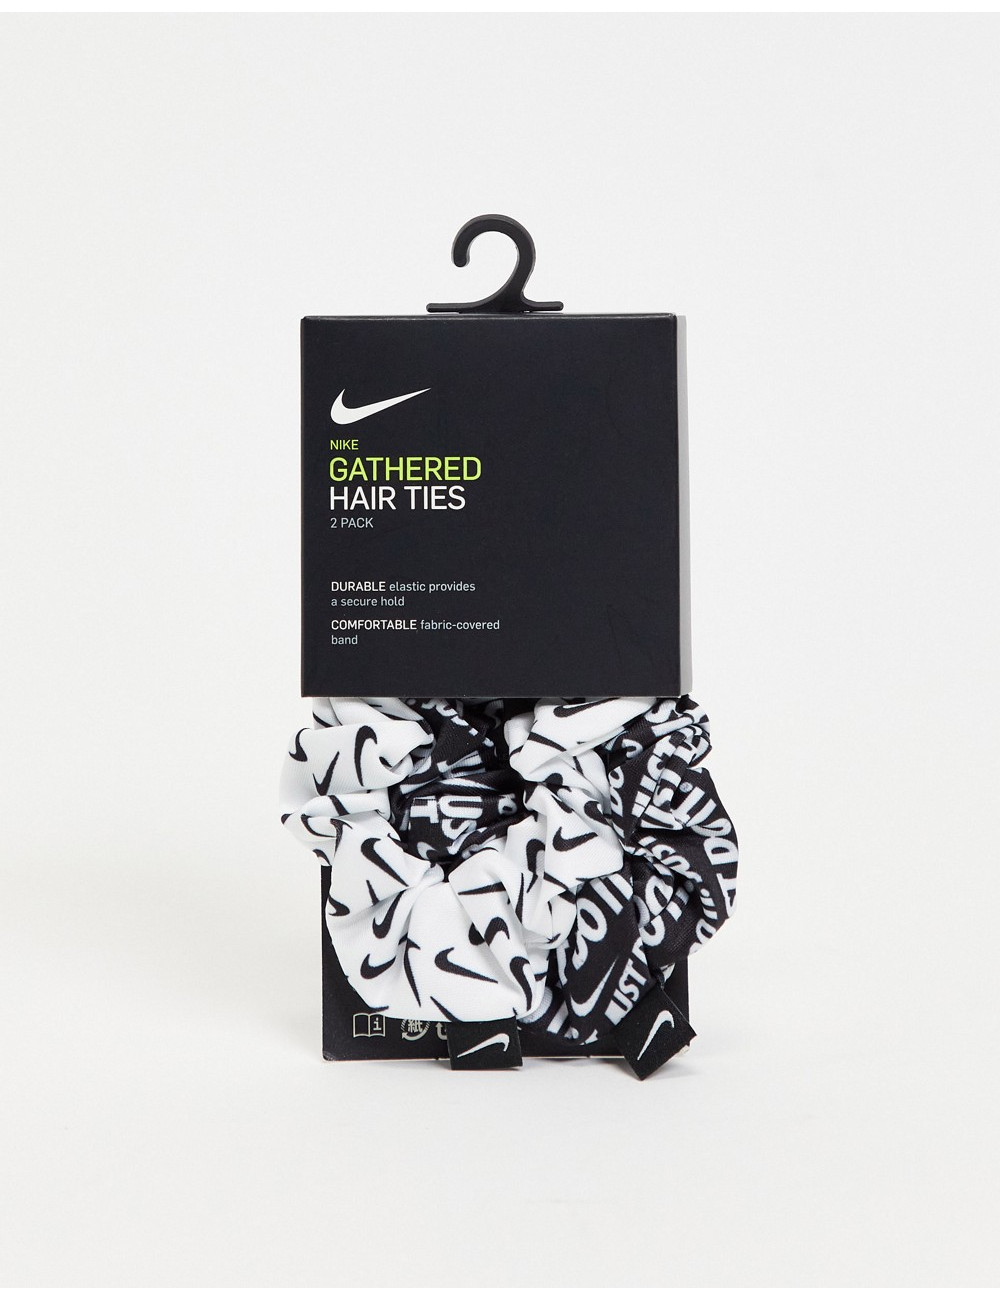 Nike 2 pack hair ties in black